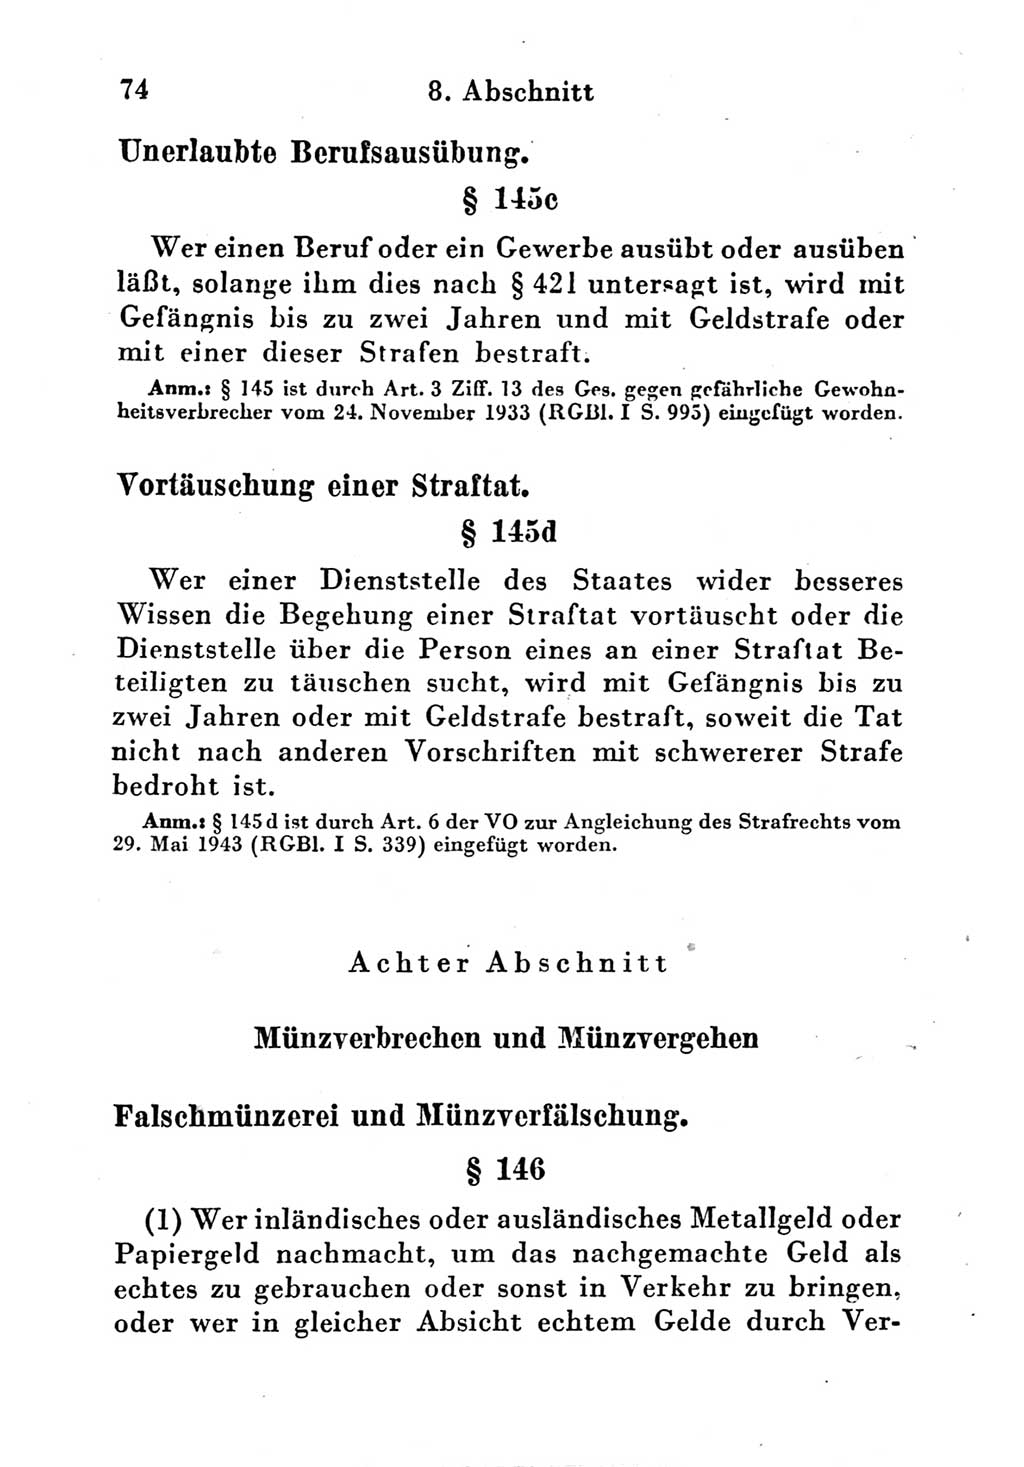 Strafgesetzbuch (StGB) und andere Strafgesetze [Deutsche Demokratische Republik (DDR)] 1951, Seite 74 (StGB Strafges. DDR 1951, S. 74)